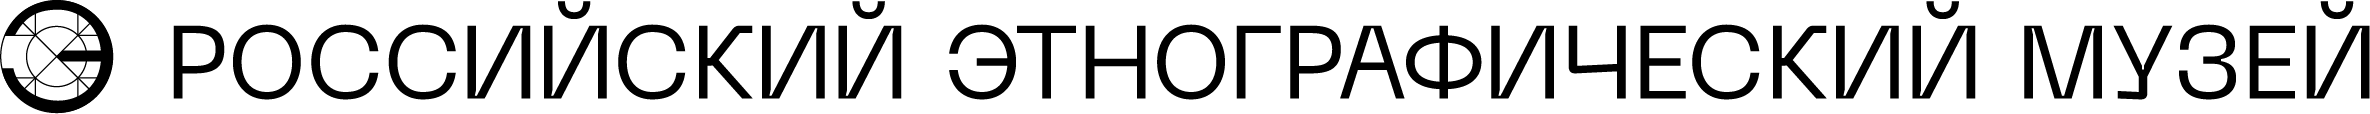 логотип российского этнографического музея